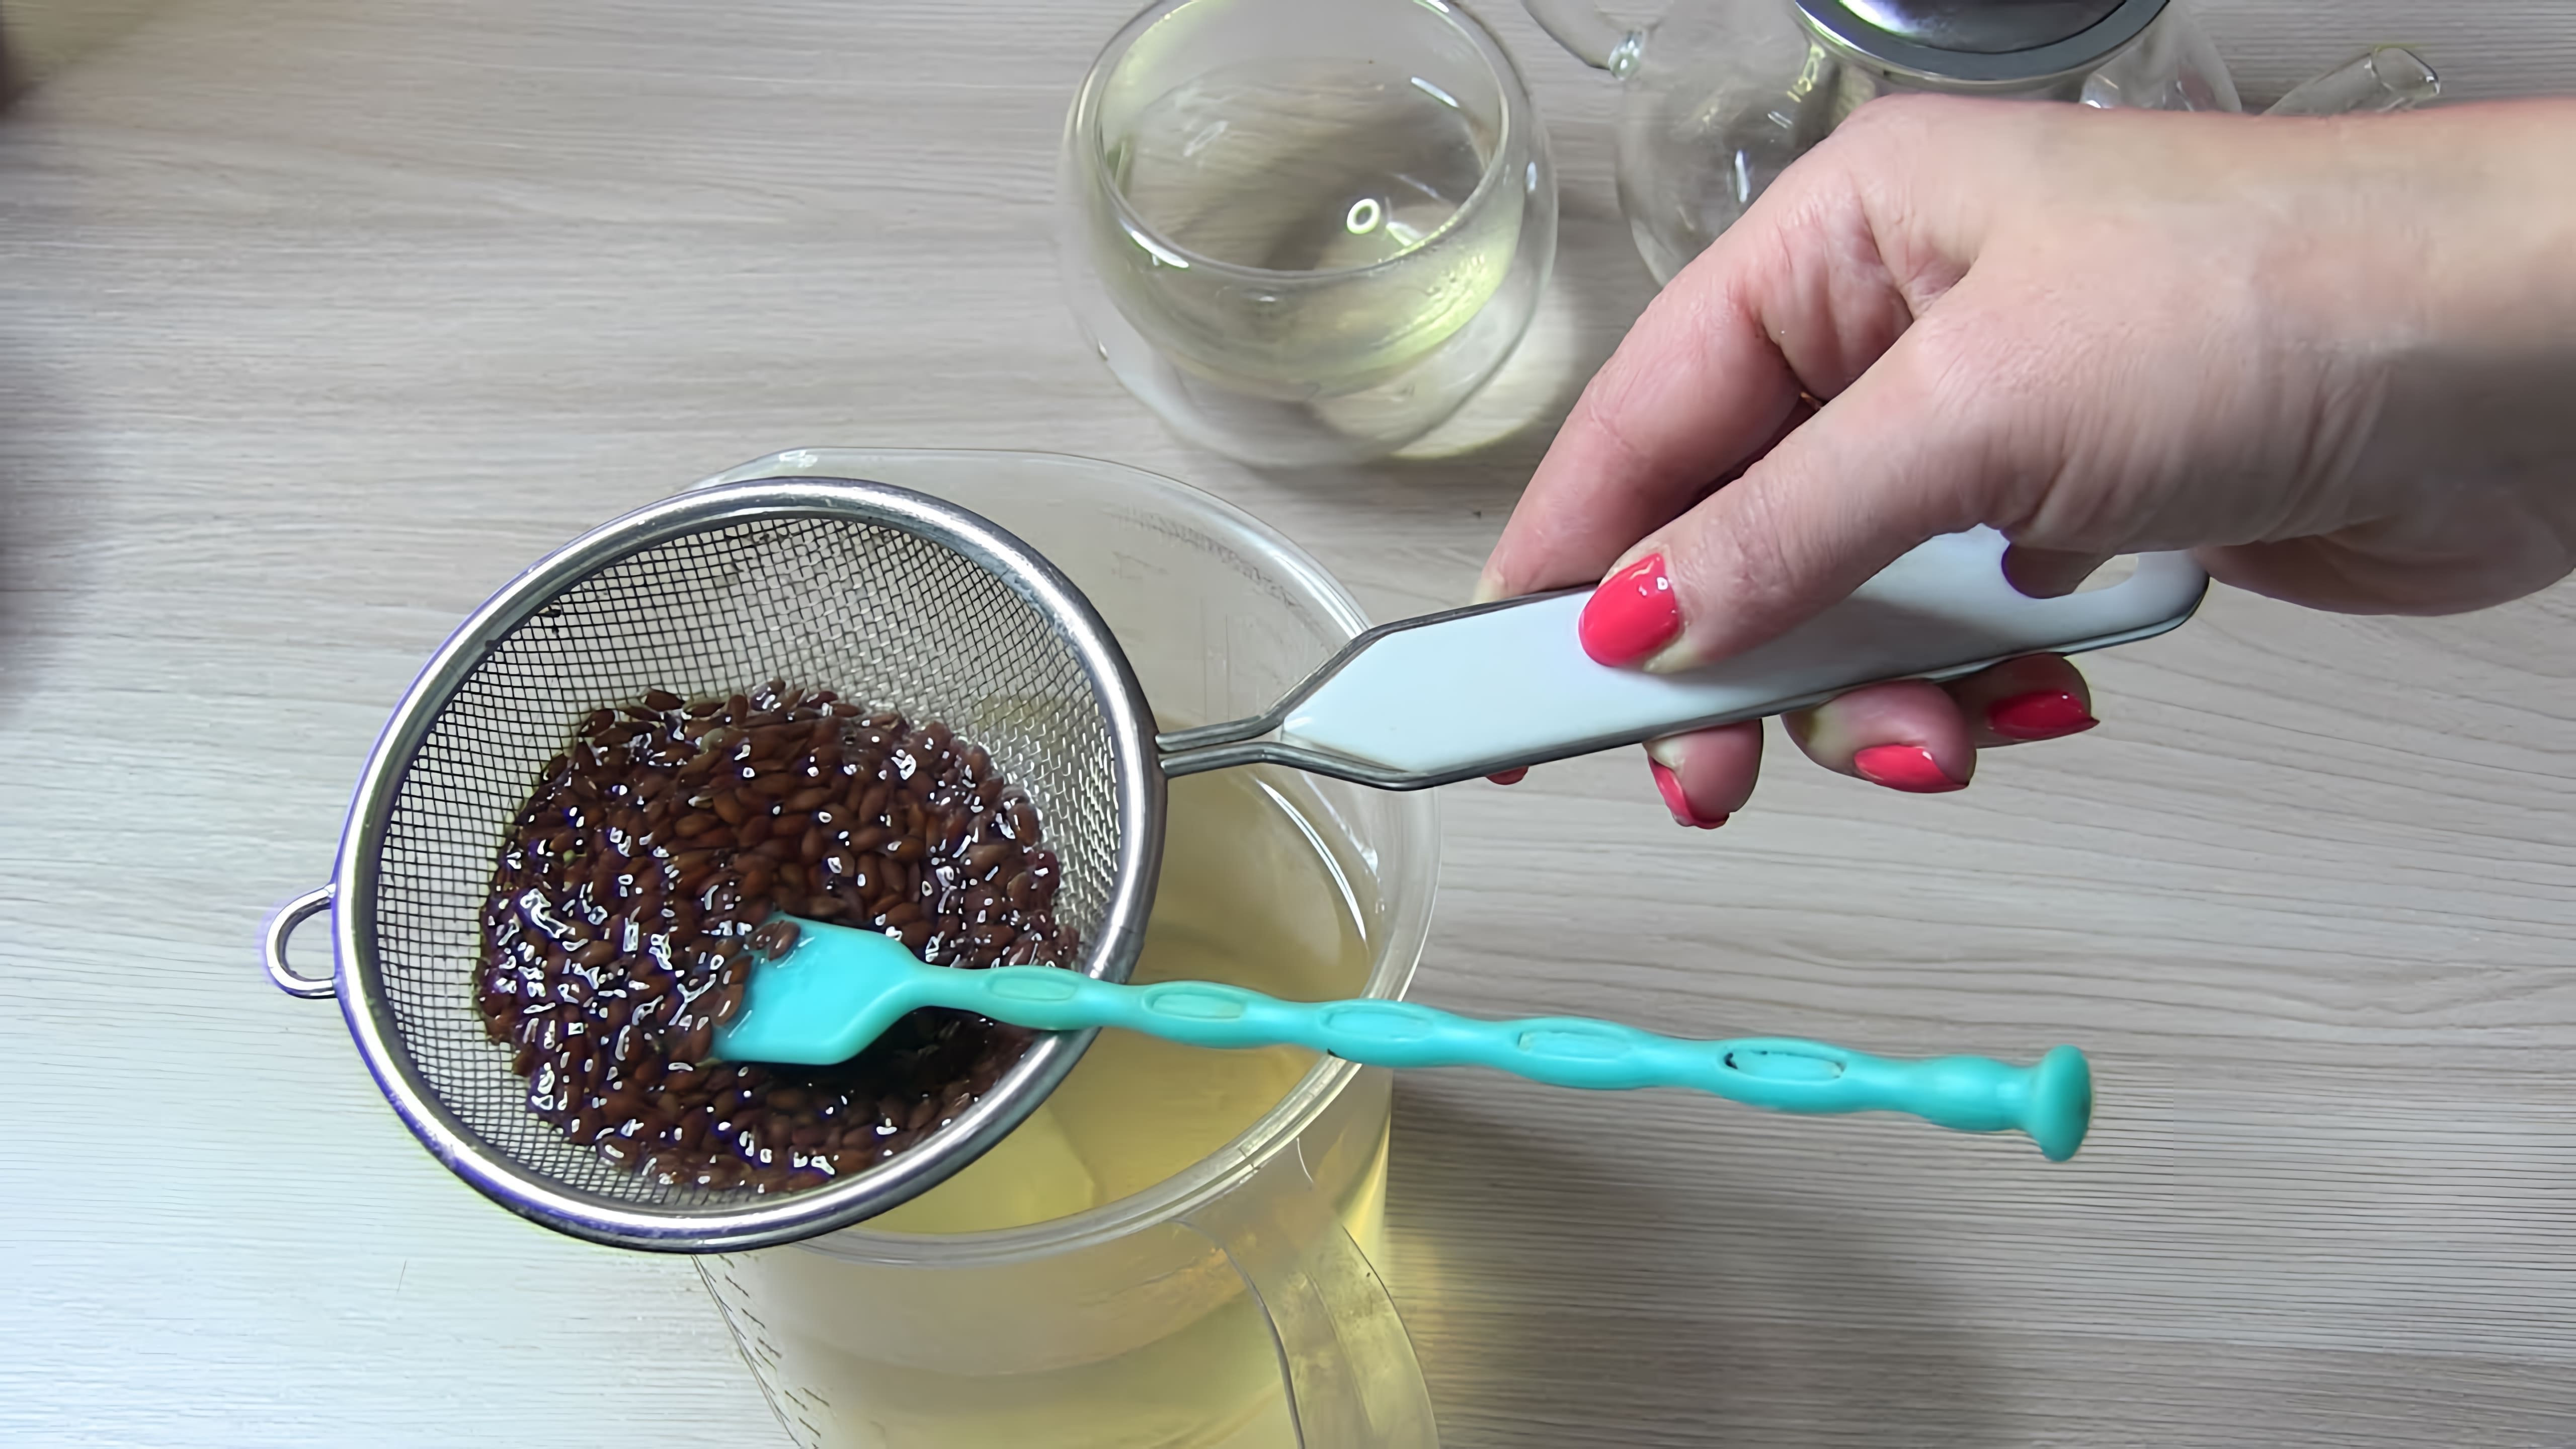 В этом видео демонстрируется рецепт мощного напитка для женщин, который помогает в потере веса, улучшении состояния кожи и волос